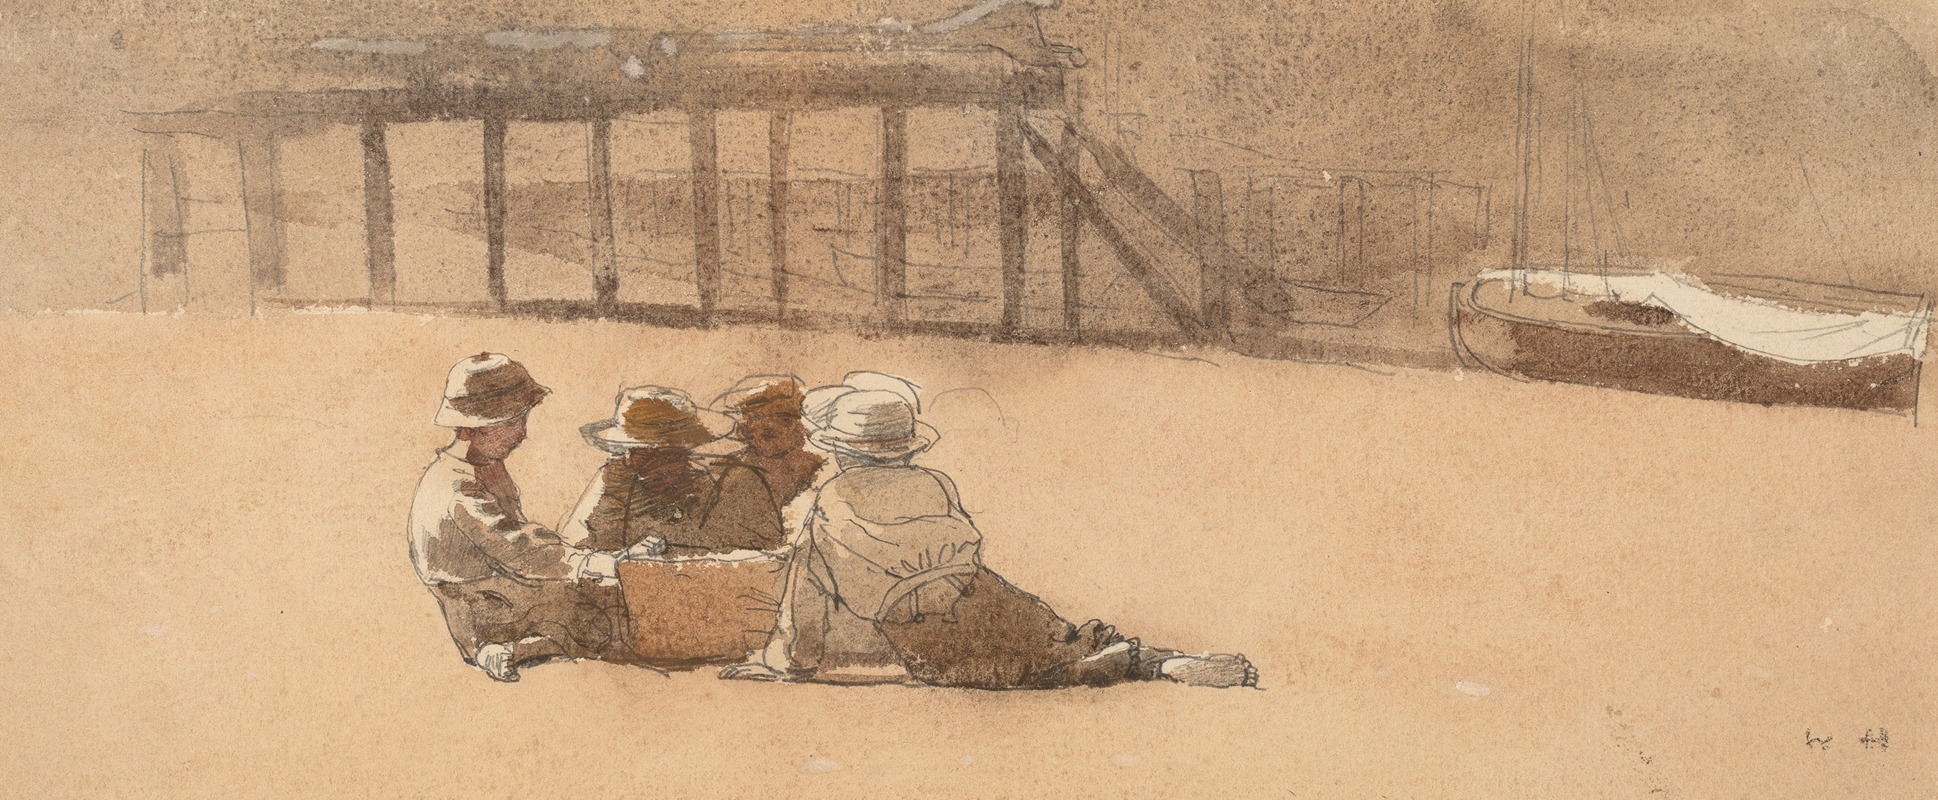 Winslow Homer - Four Boys on a Beach